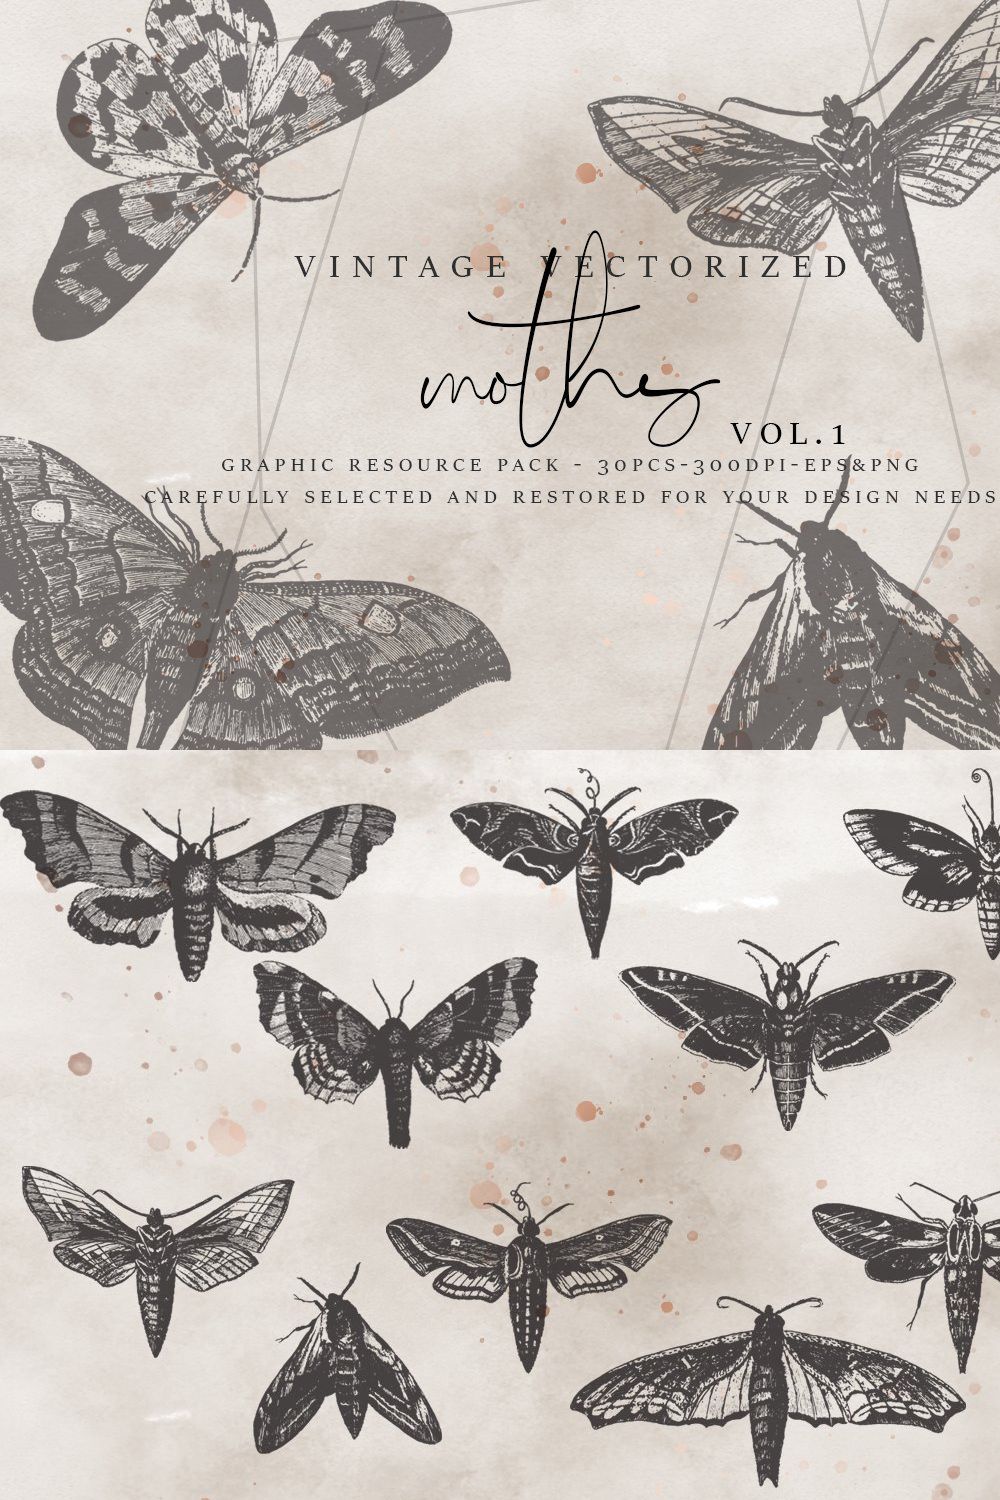 VintageVectorized-Moths Clipart pinterest preview image.